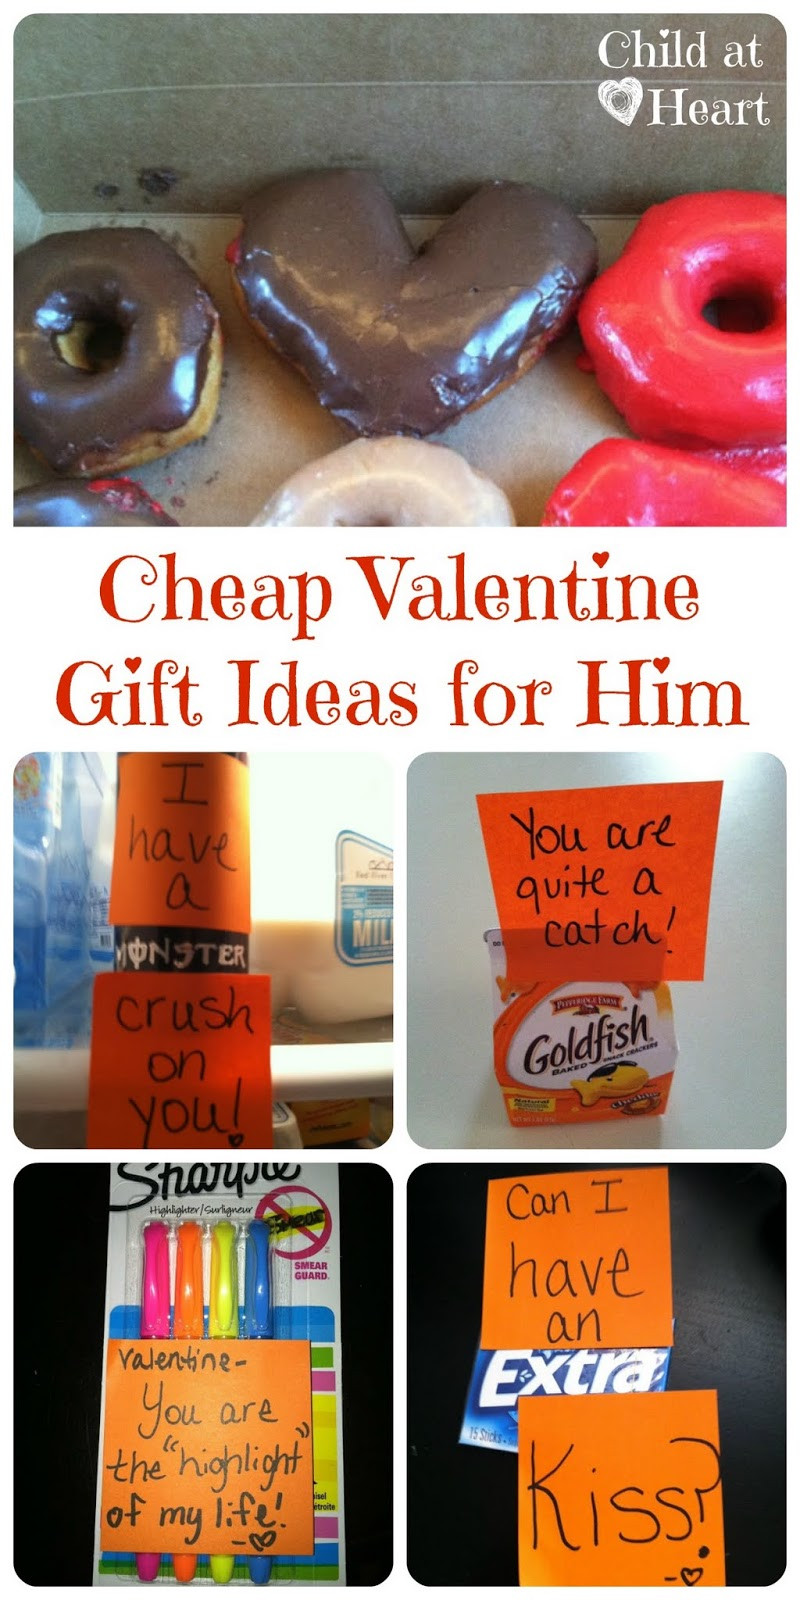 Valentines Day Gift Ideas For Boyfriend
 Cheap Valentine Gift Ideas for Him Child at Heart Blog